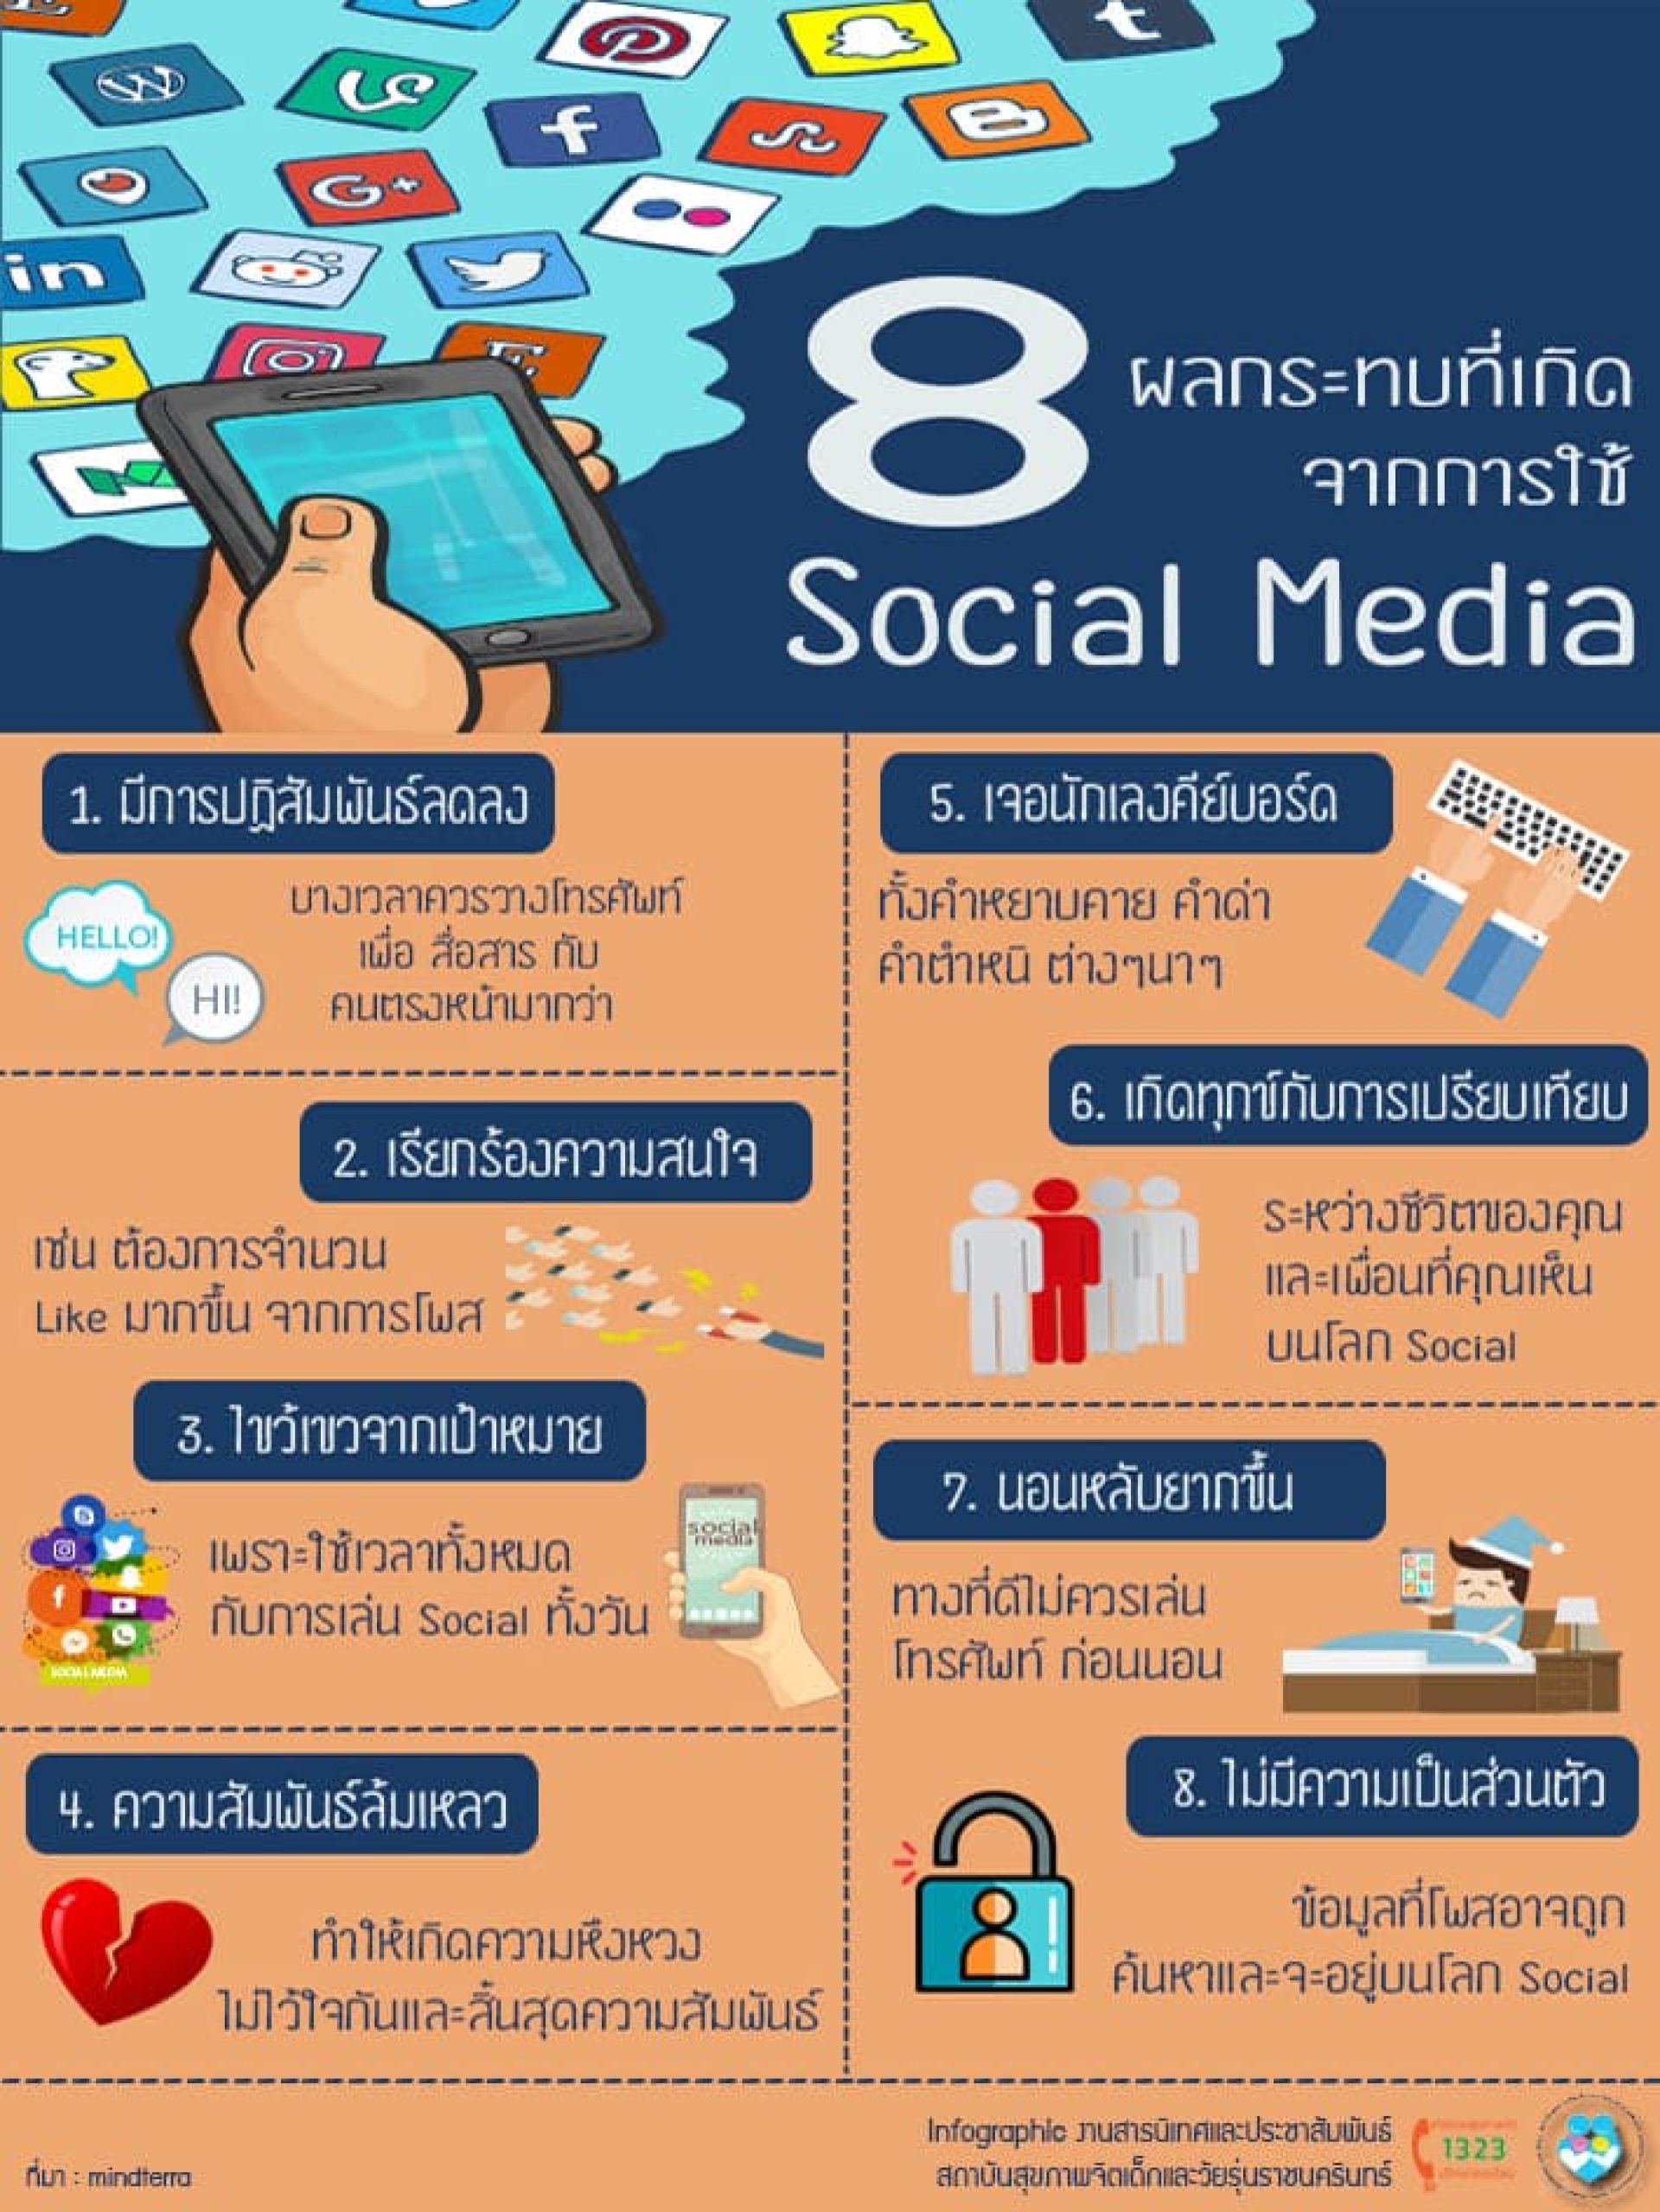 8 ผลกระทบที่เกิดจากการใช้ Social Media